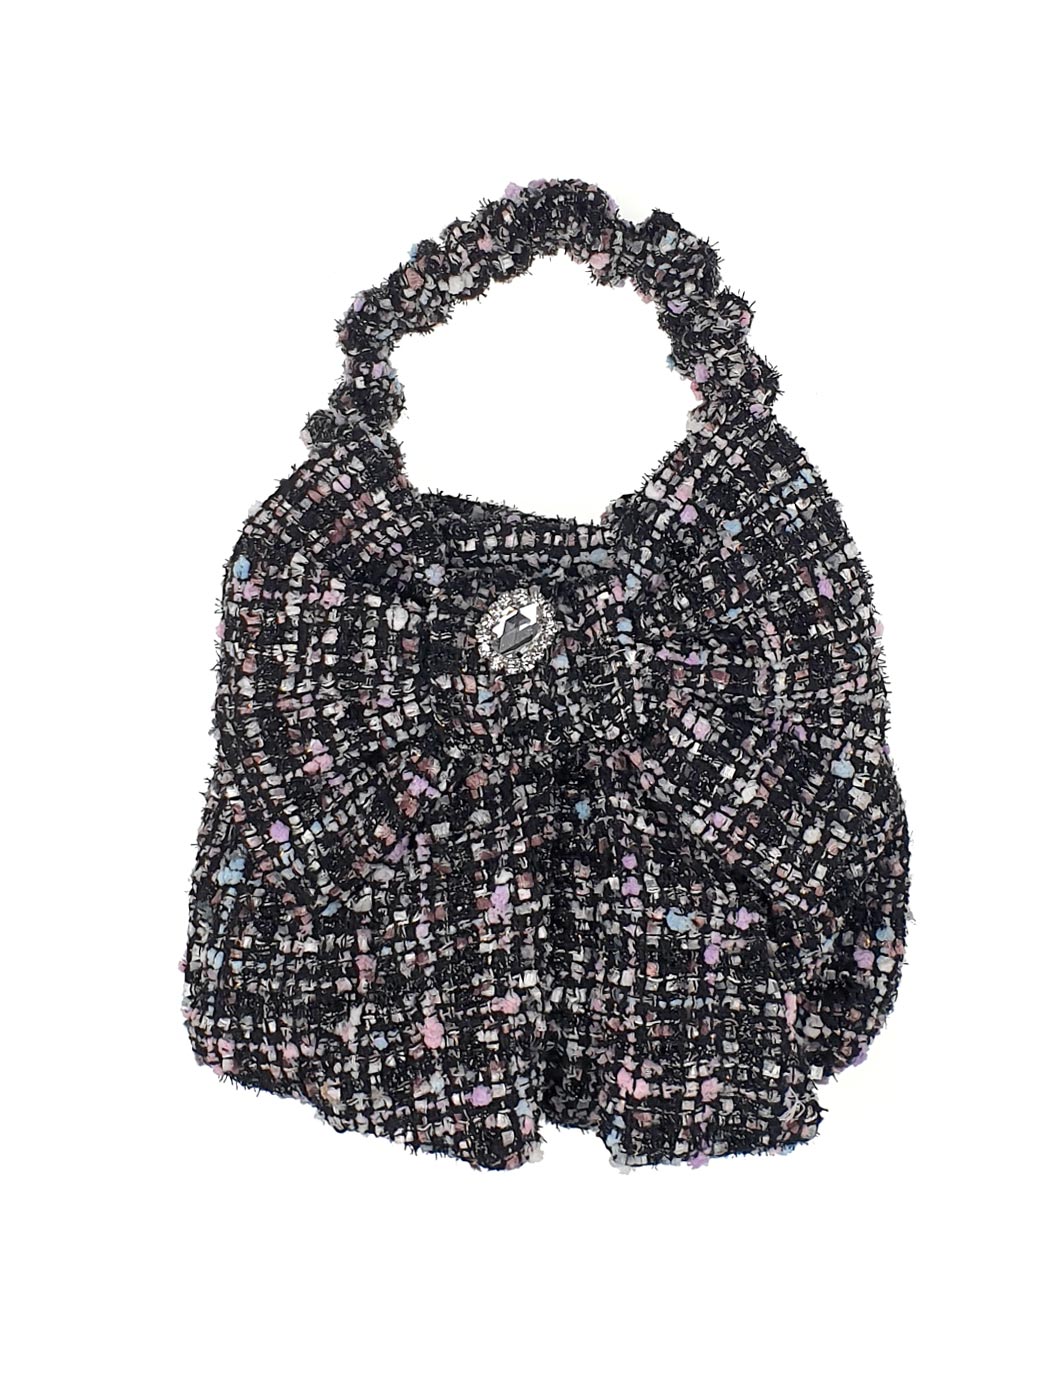 Μίνι τσάντα χειρός tweed διακοσμημένη με στρας πέτρα